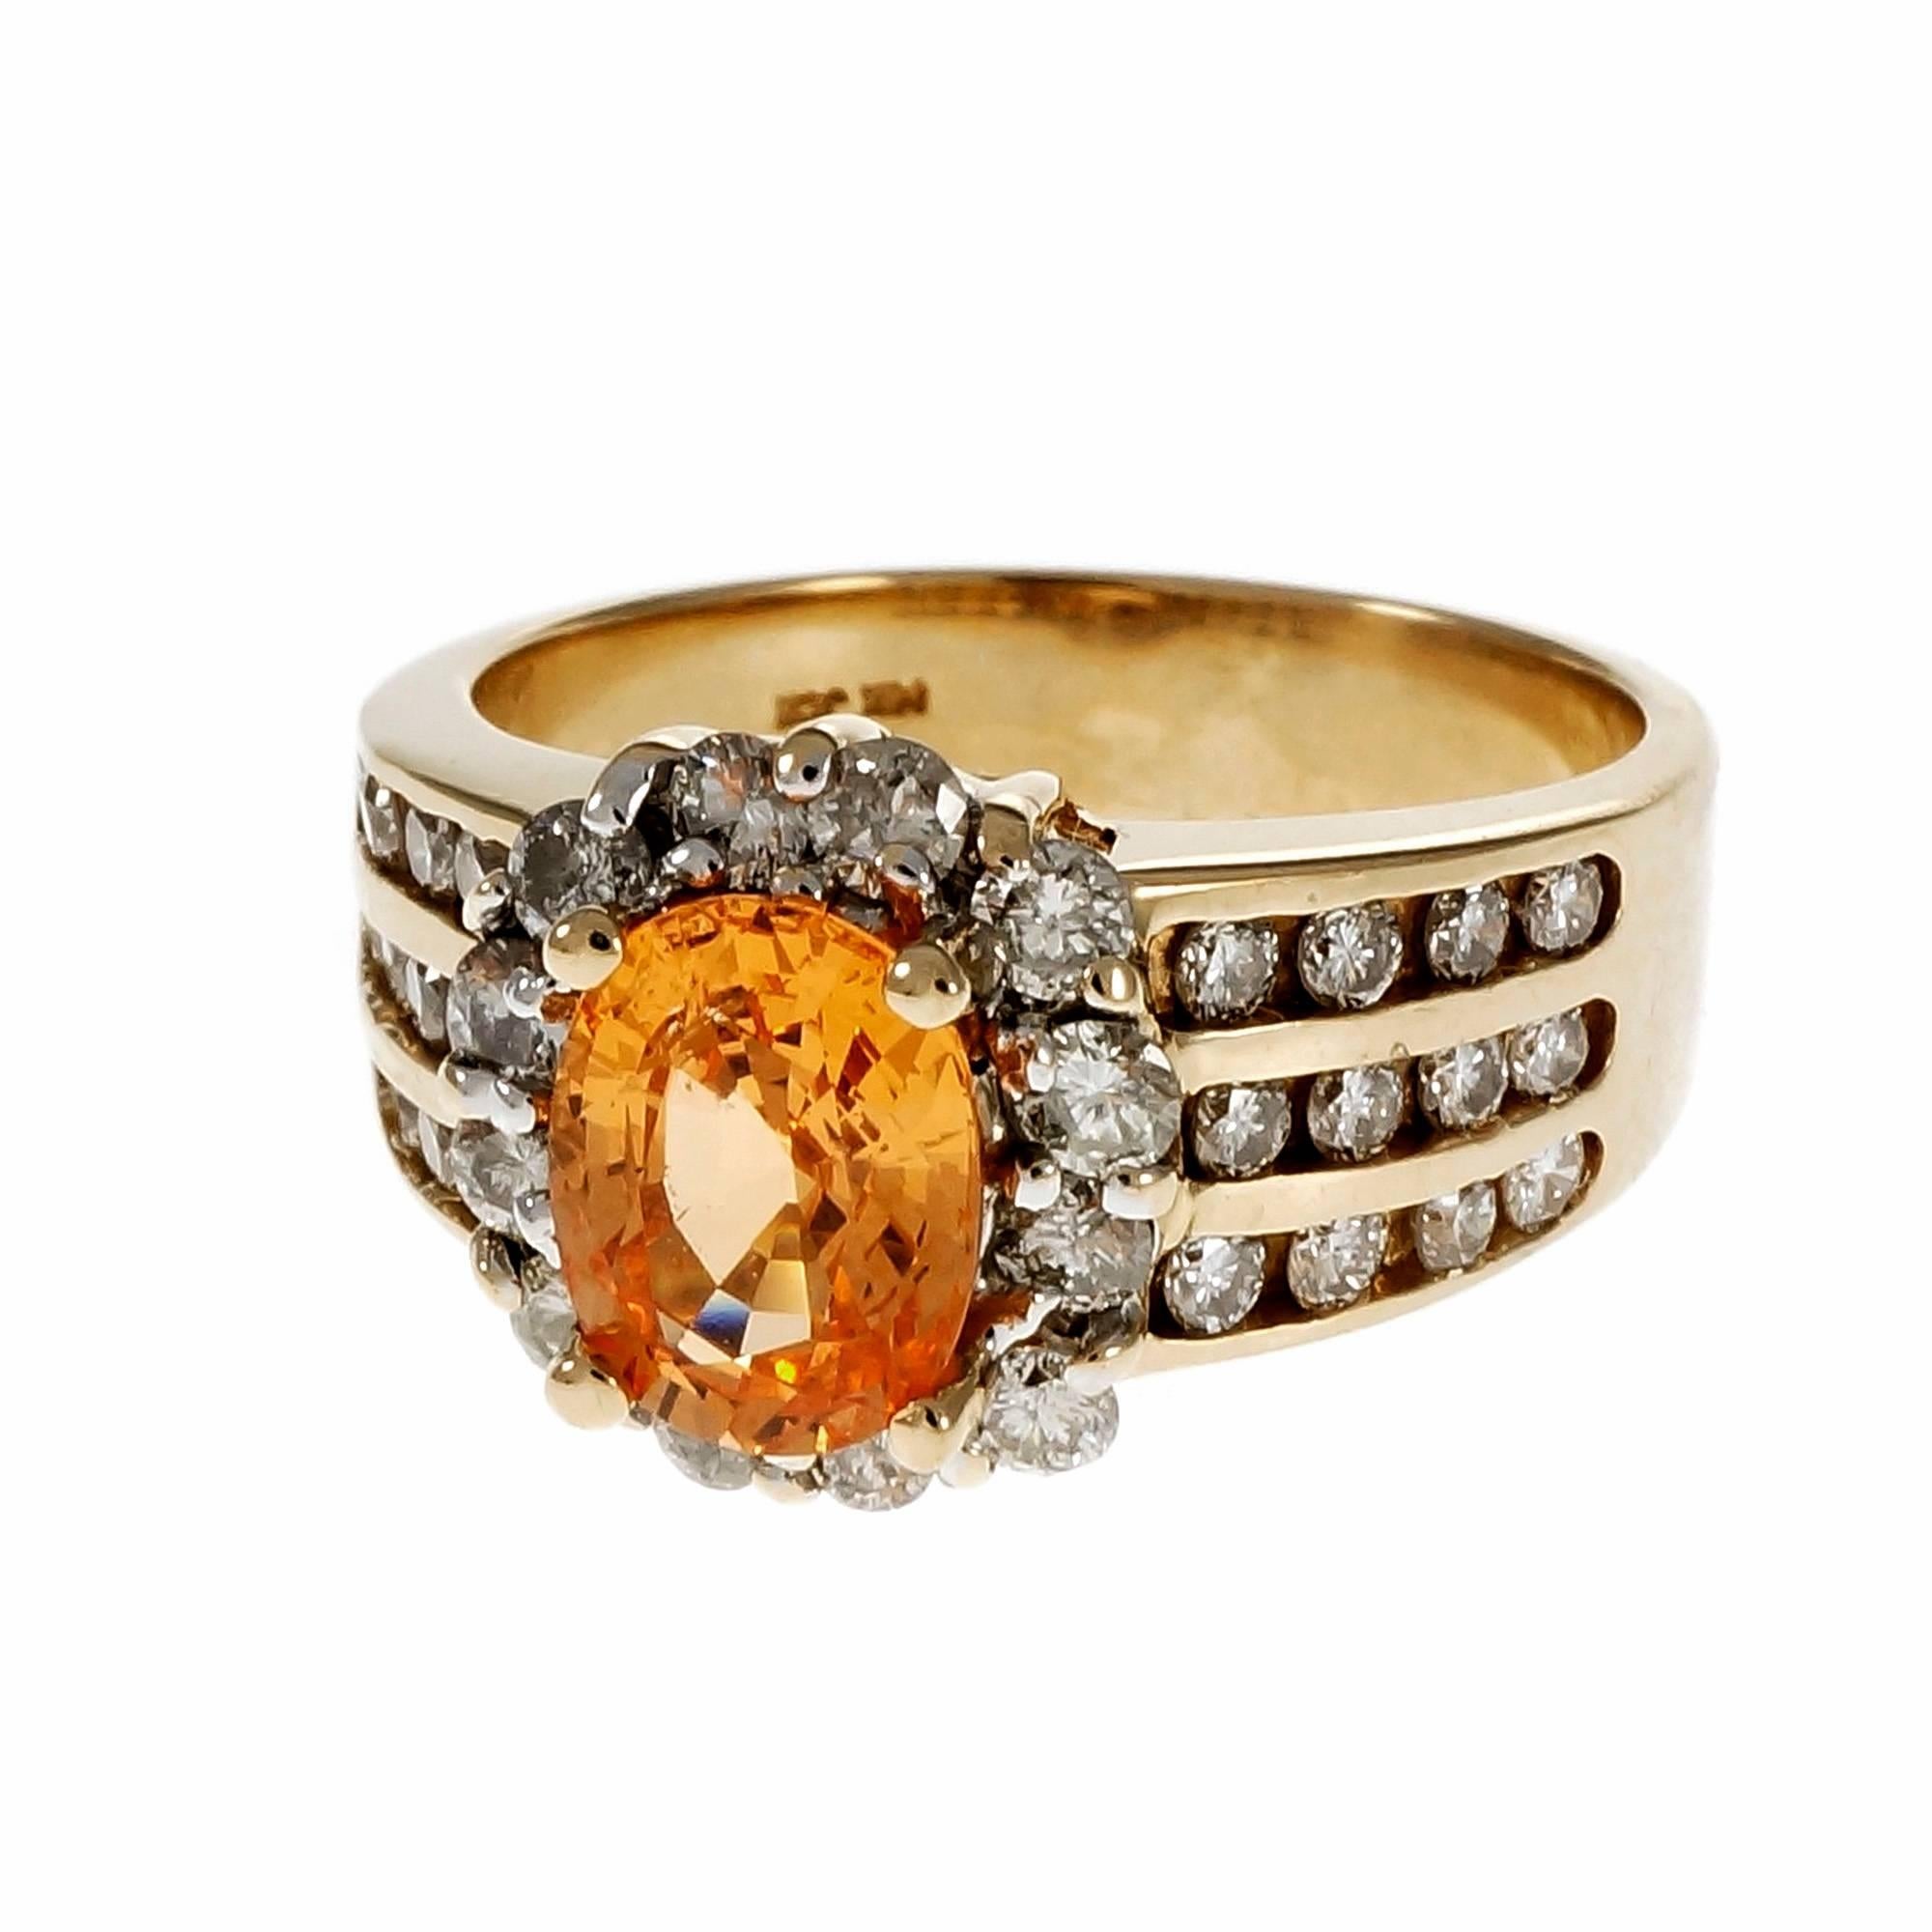 Estate leuchtend orange Spessartit Granat mit einem Diamant Halo und drei Reihen von Diamanten auf jeder Seite in einem 14k Gelbgold Fassung. 

1 ovaler orangefarbener Spessartit-Granat, Gesamtgewicht ca. 1,81cts, VS
36 runde Diamanten im